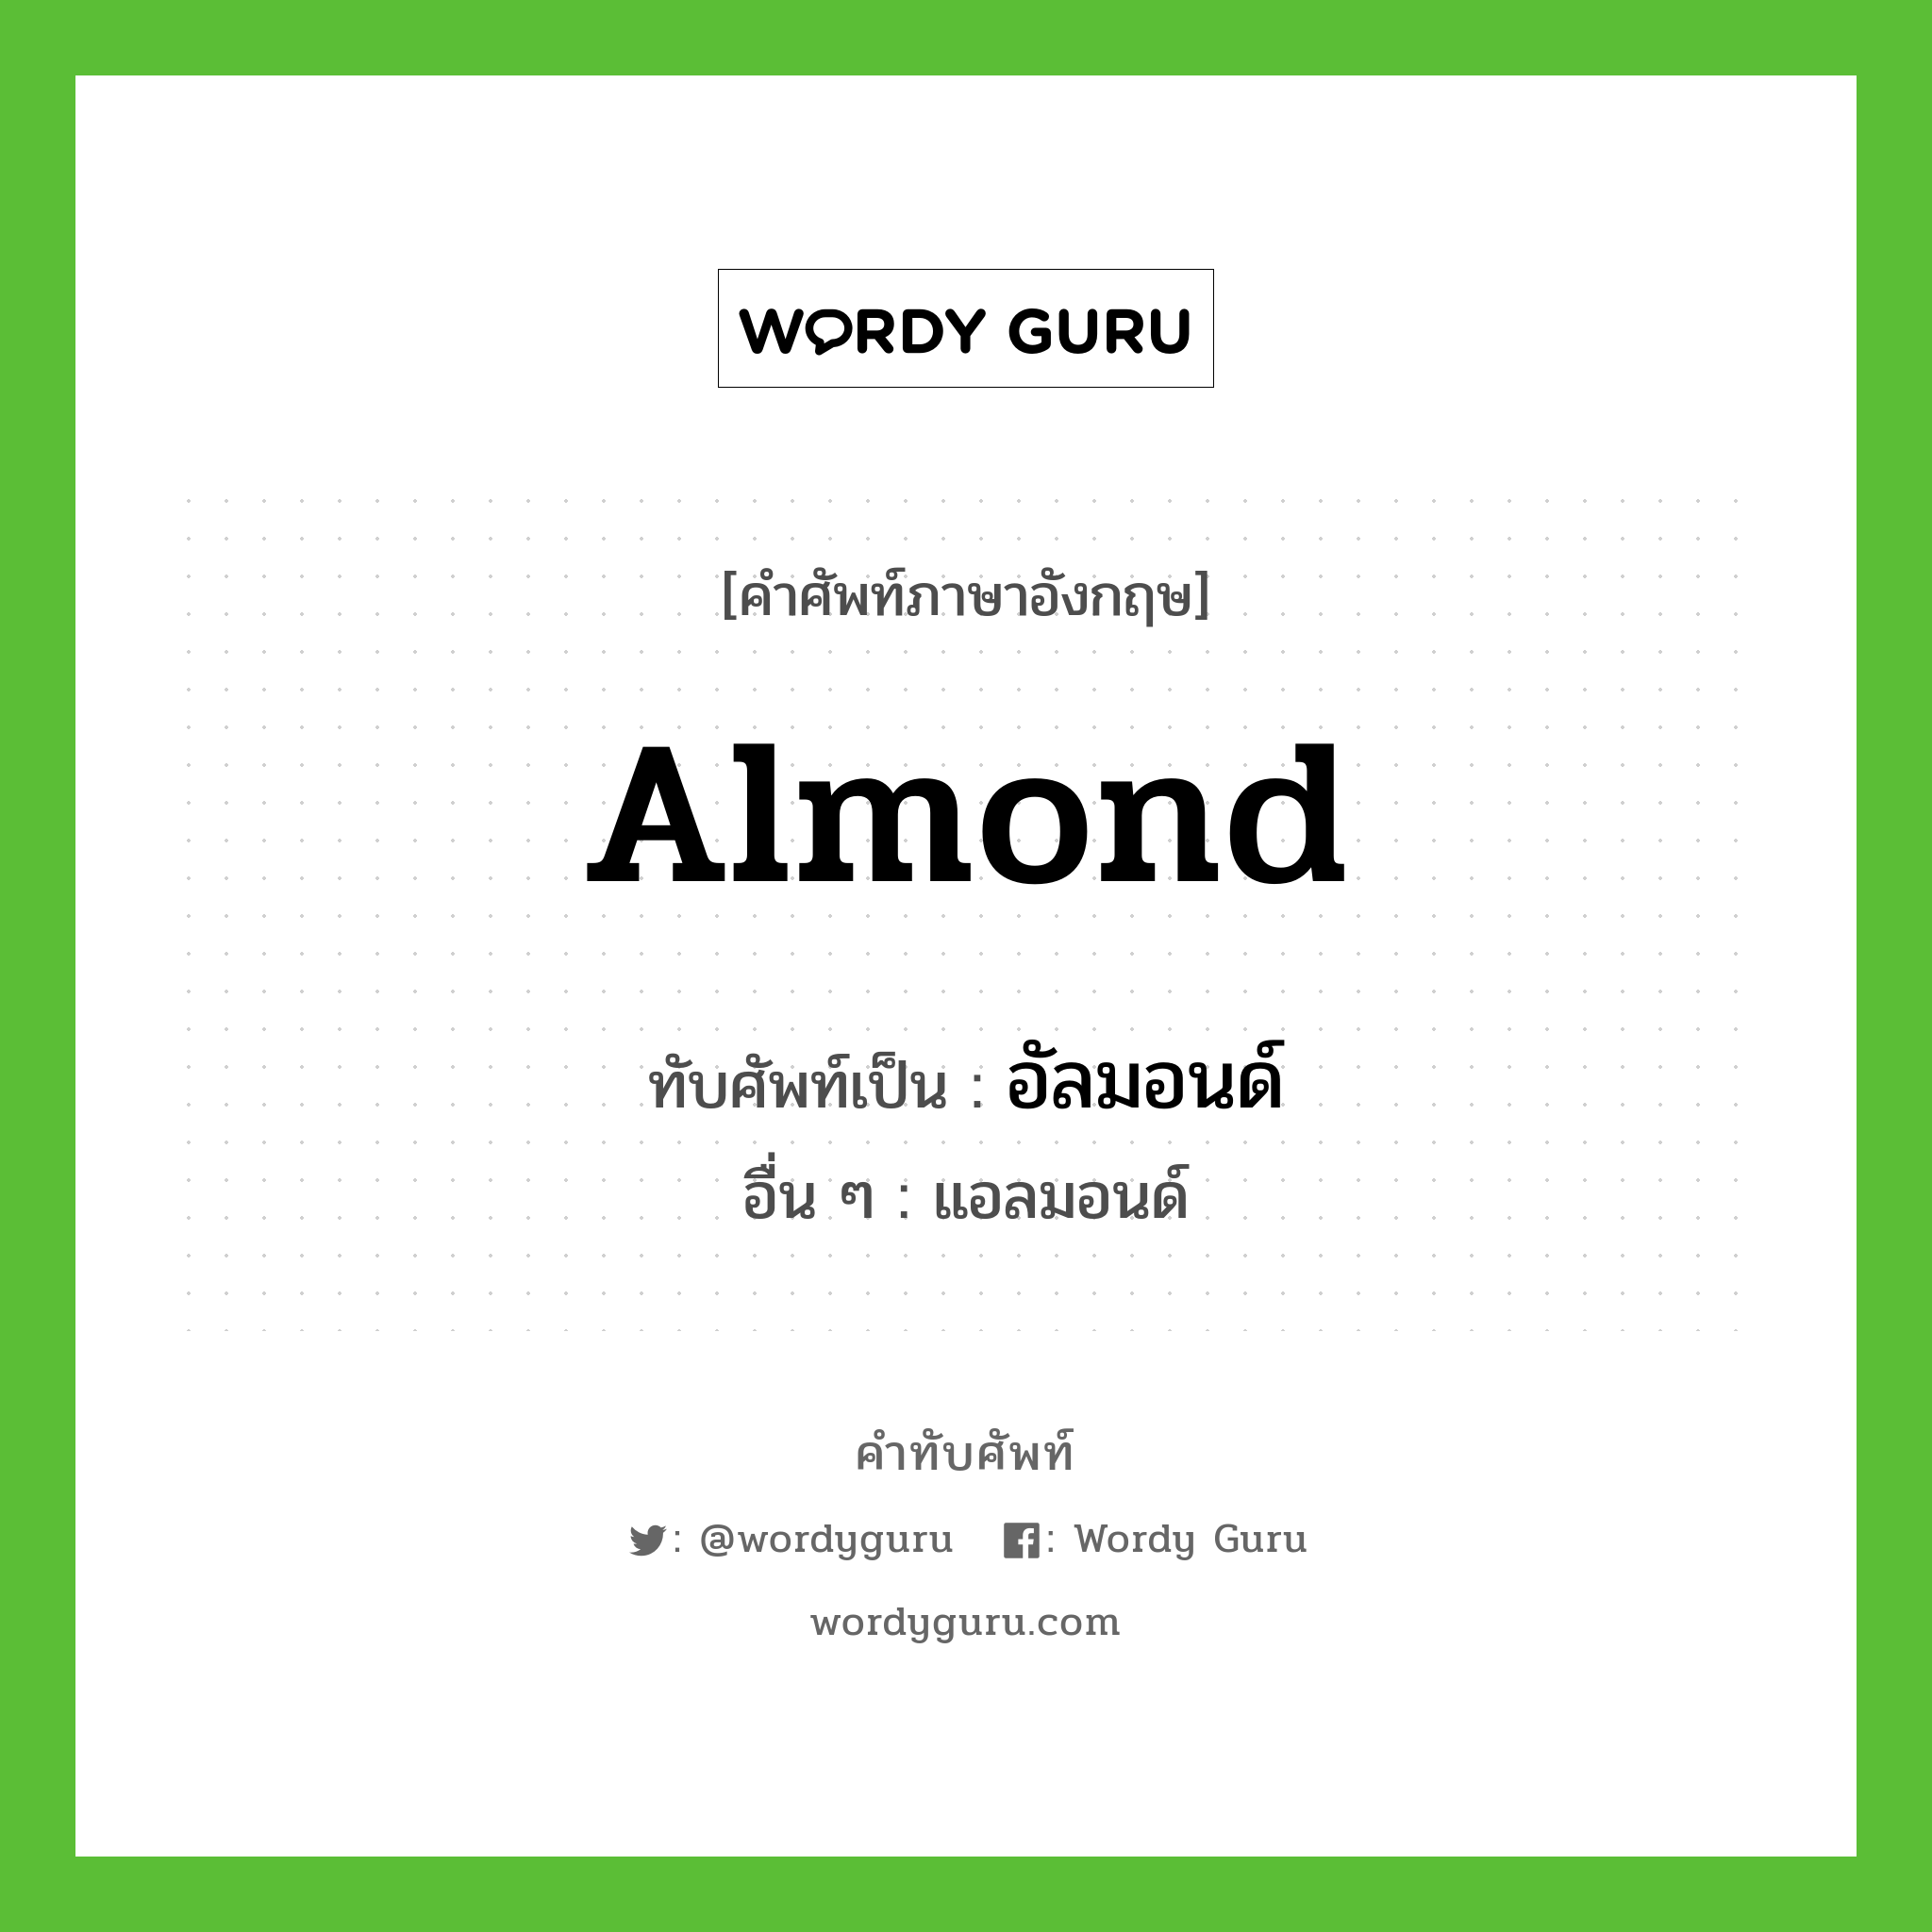 almond เขียนเป็นคำไทยว่าอะไร?, คำศัพท์ภาษาอังกฤษ almond ทับศัพท์เป็น อัลมอนด์ อื่น ๆ แอลมอนด์